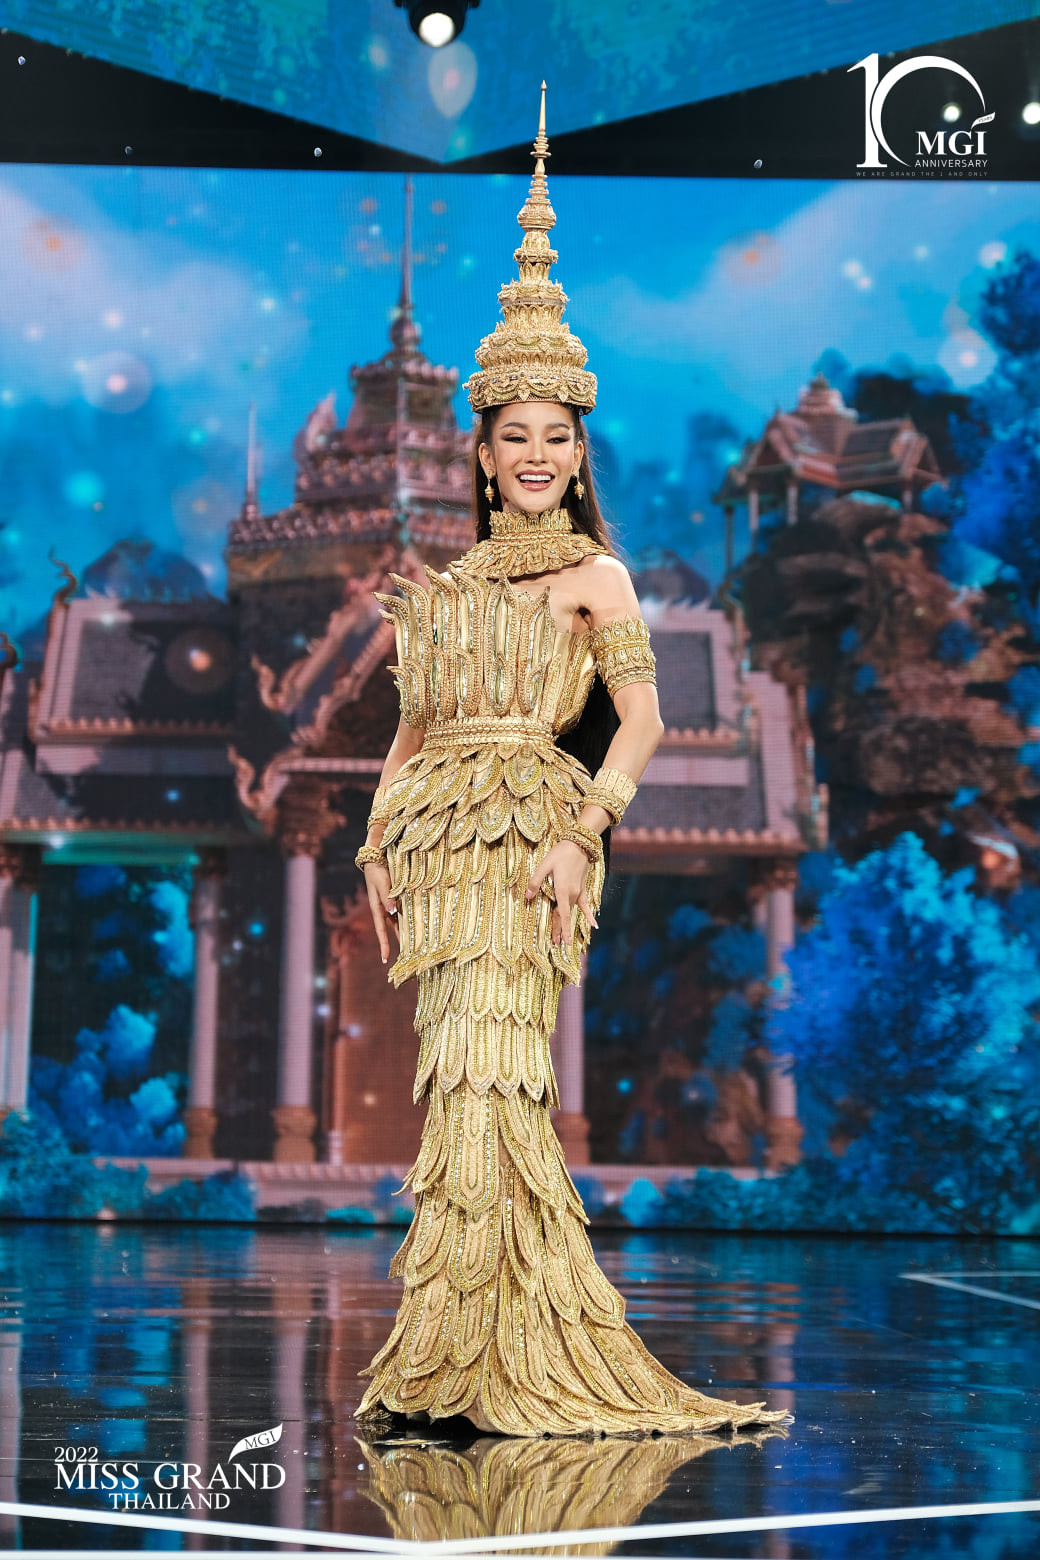 trajes tipicos de candidatas a miss grand thailand 2022. - Página 4 VtVgR9